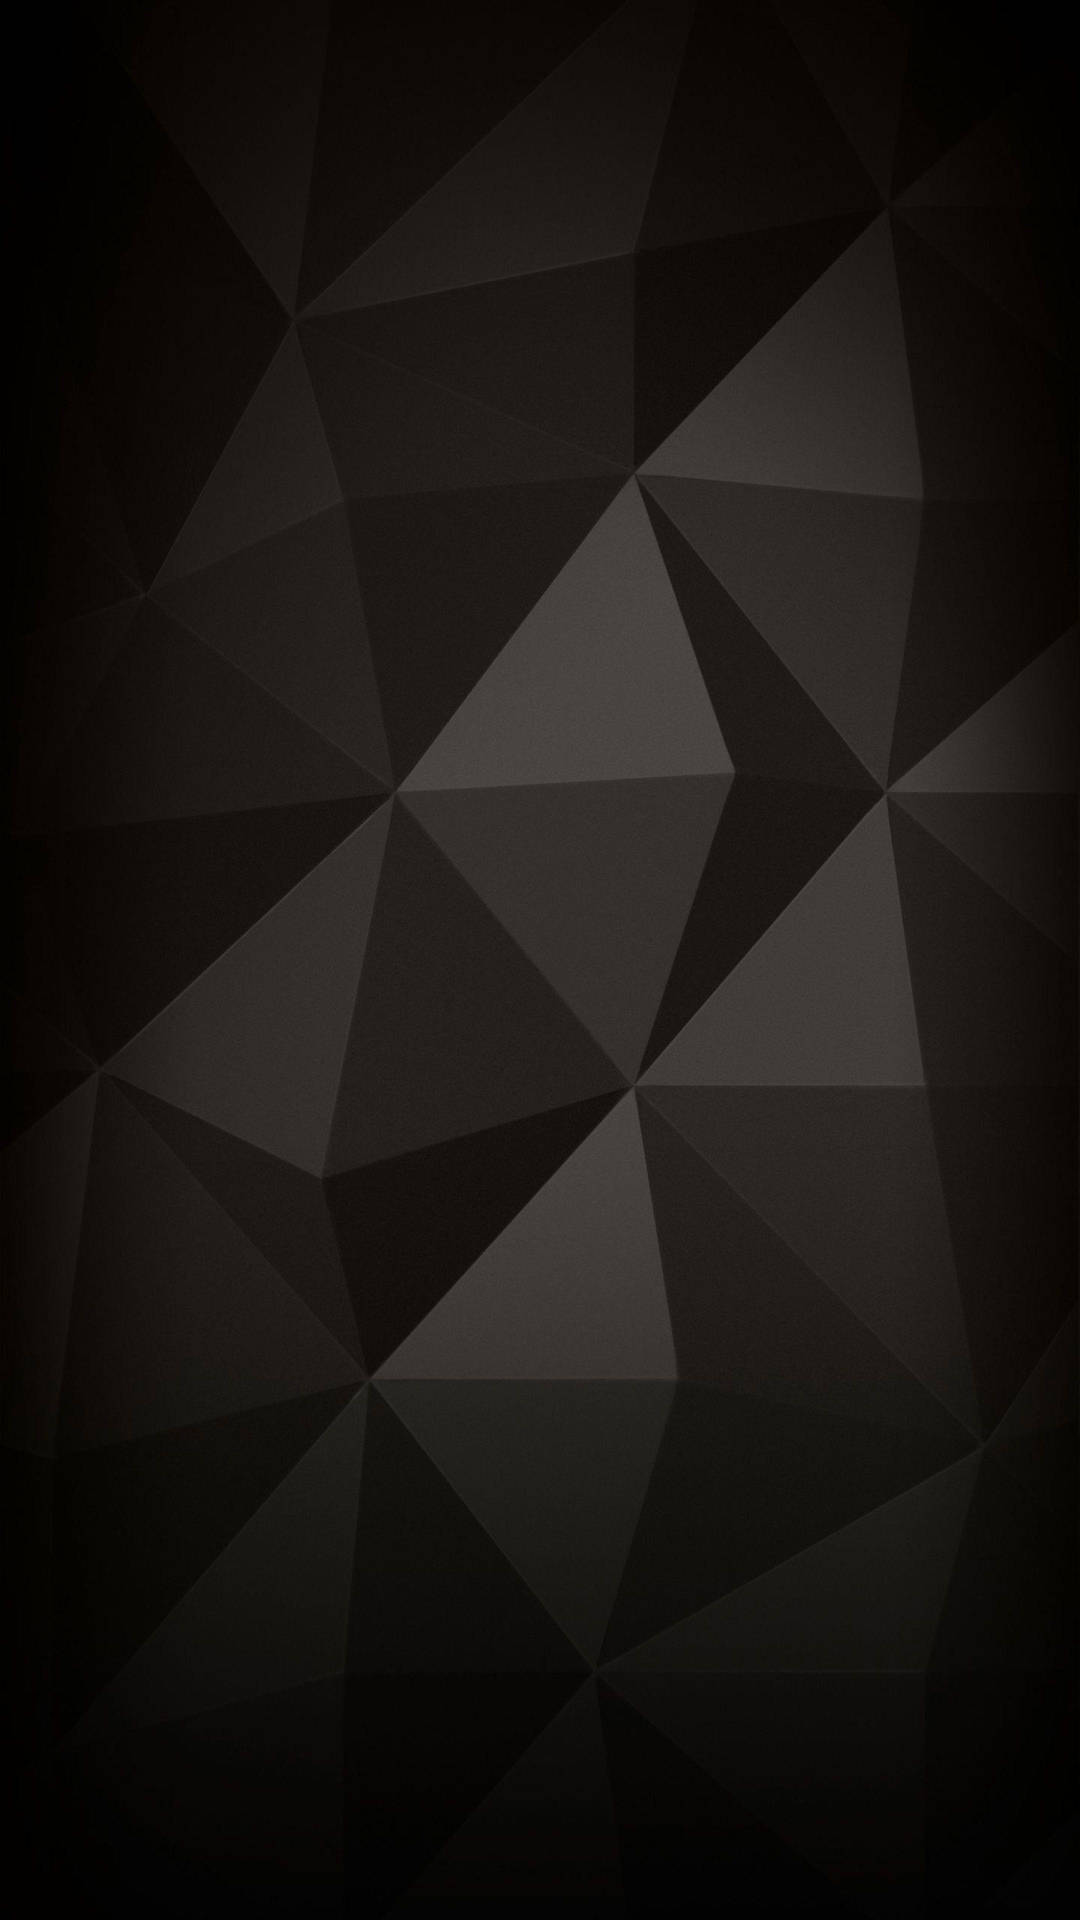 Geometric 4k Ultra Hd Dark Phone Wallpaper